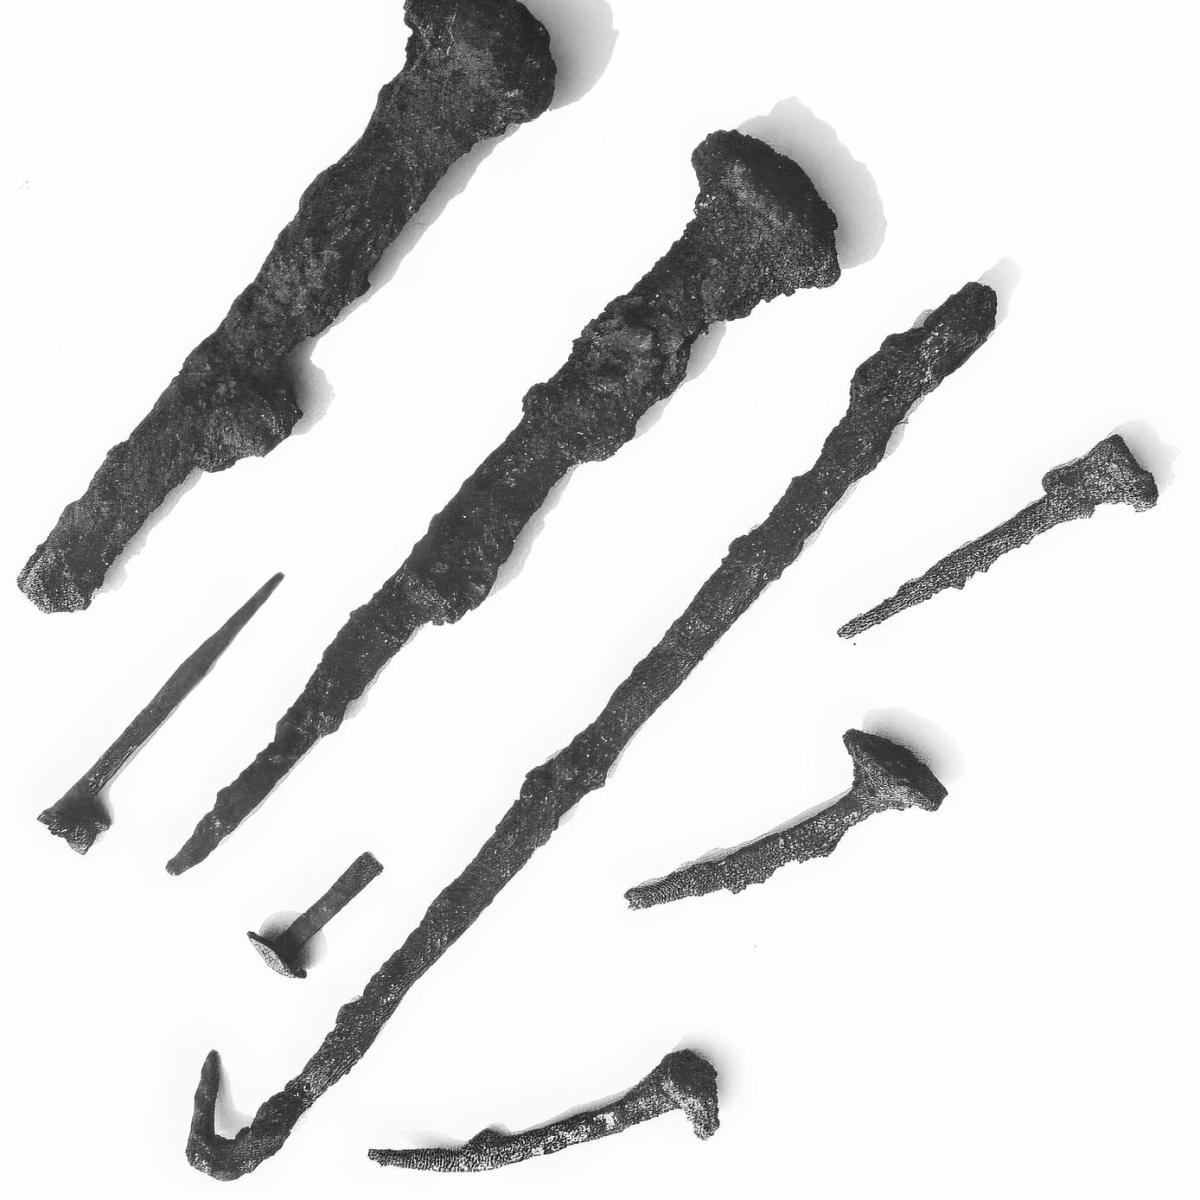 1962: Nägel und Werkzeuge gefunden an der Ausgrabung des römischen Gutshofs im Lachenhau (heute Kreuzung Keltenstraße und Hallstattstraße) (Quelle: Walter Brants)